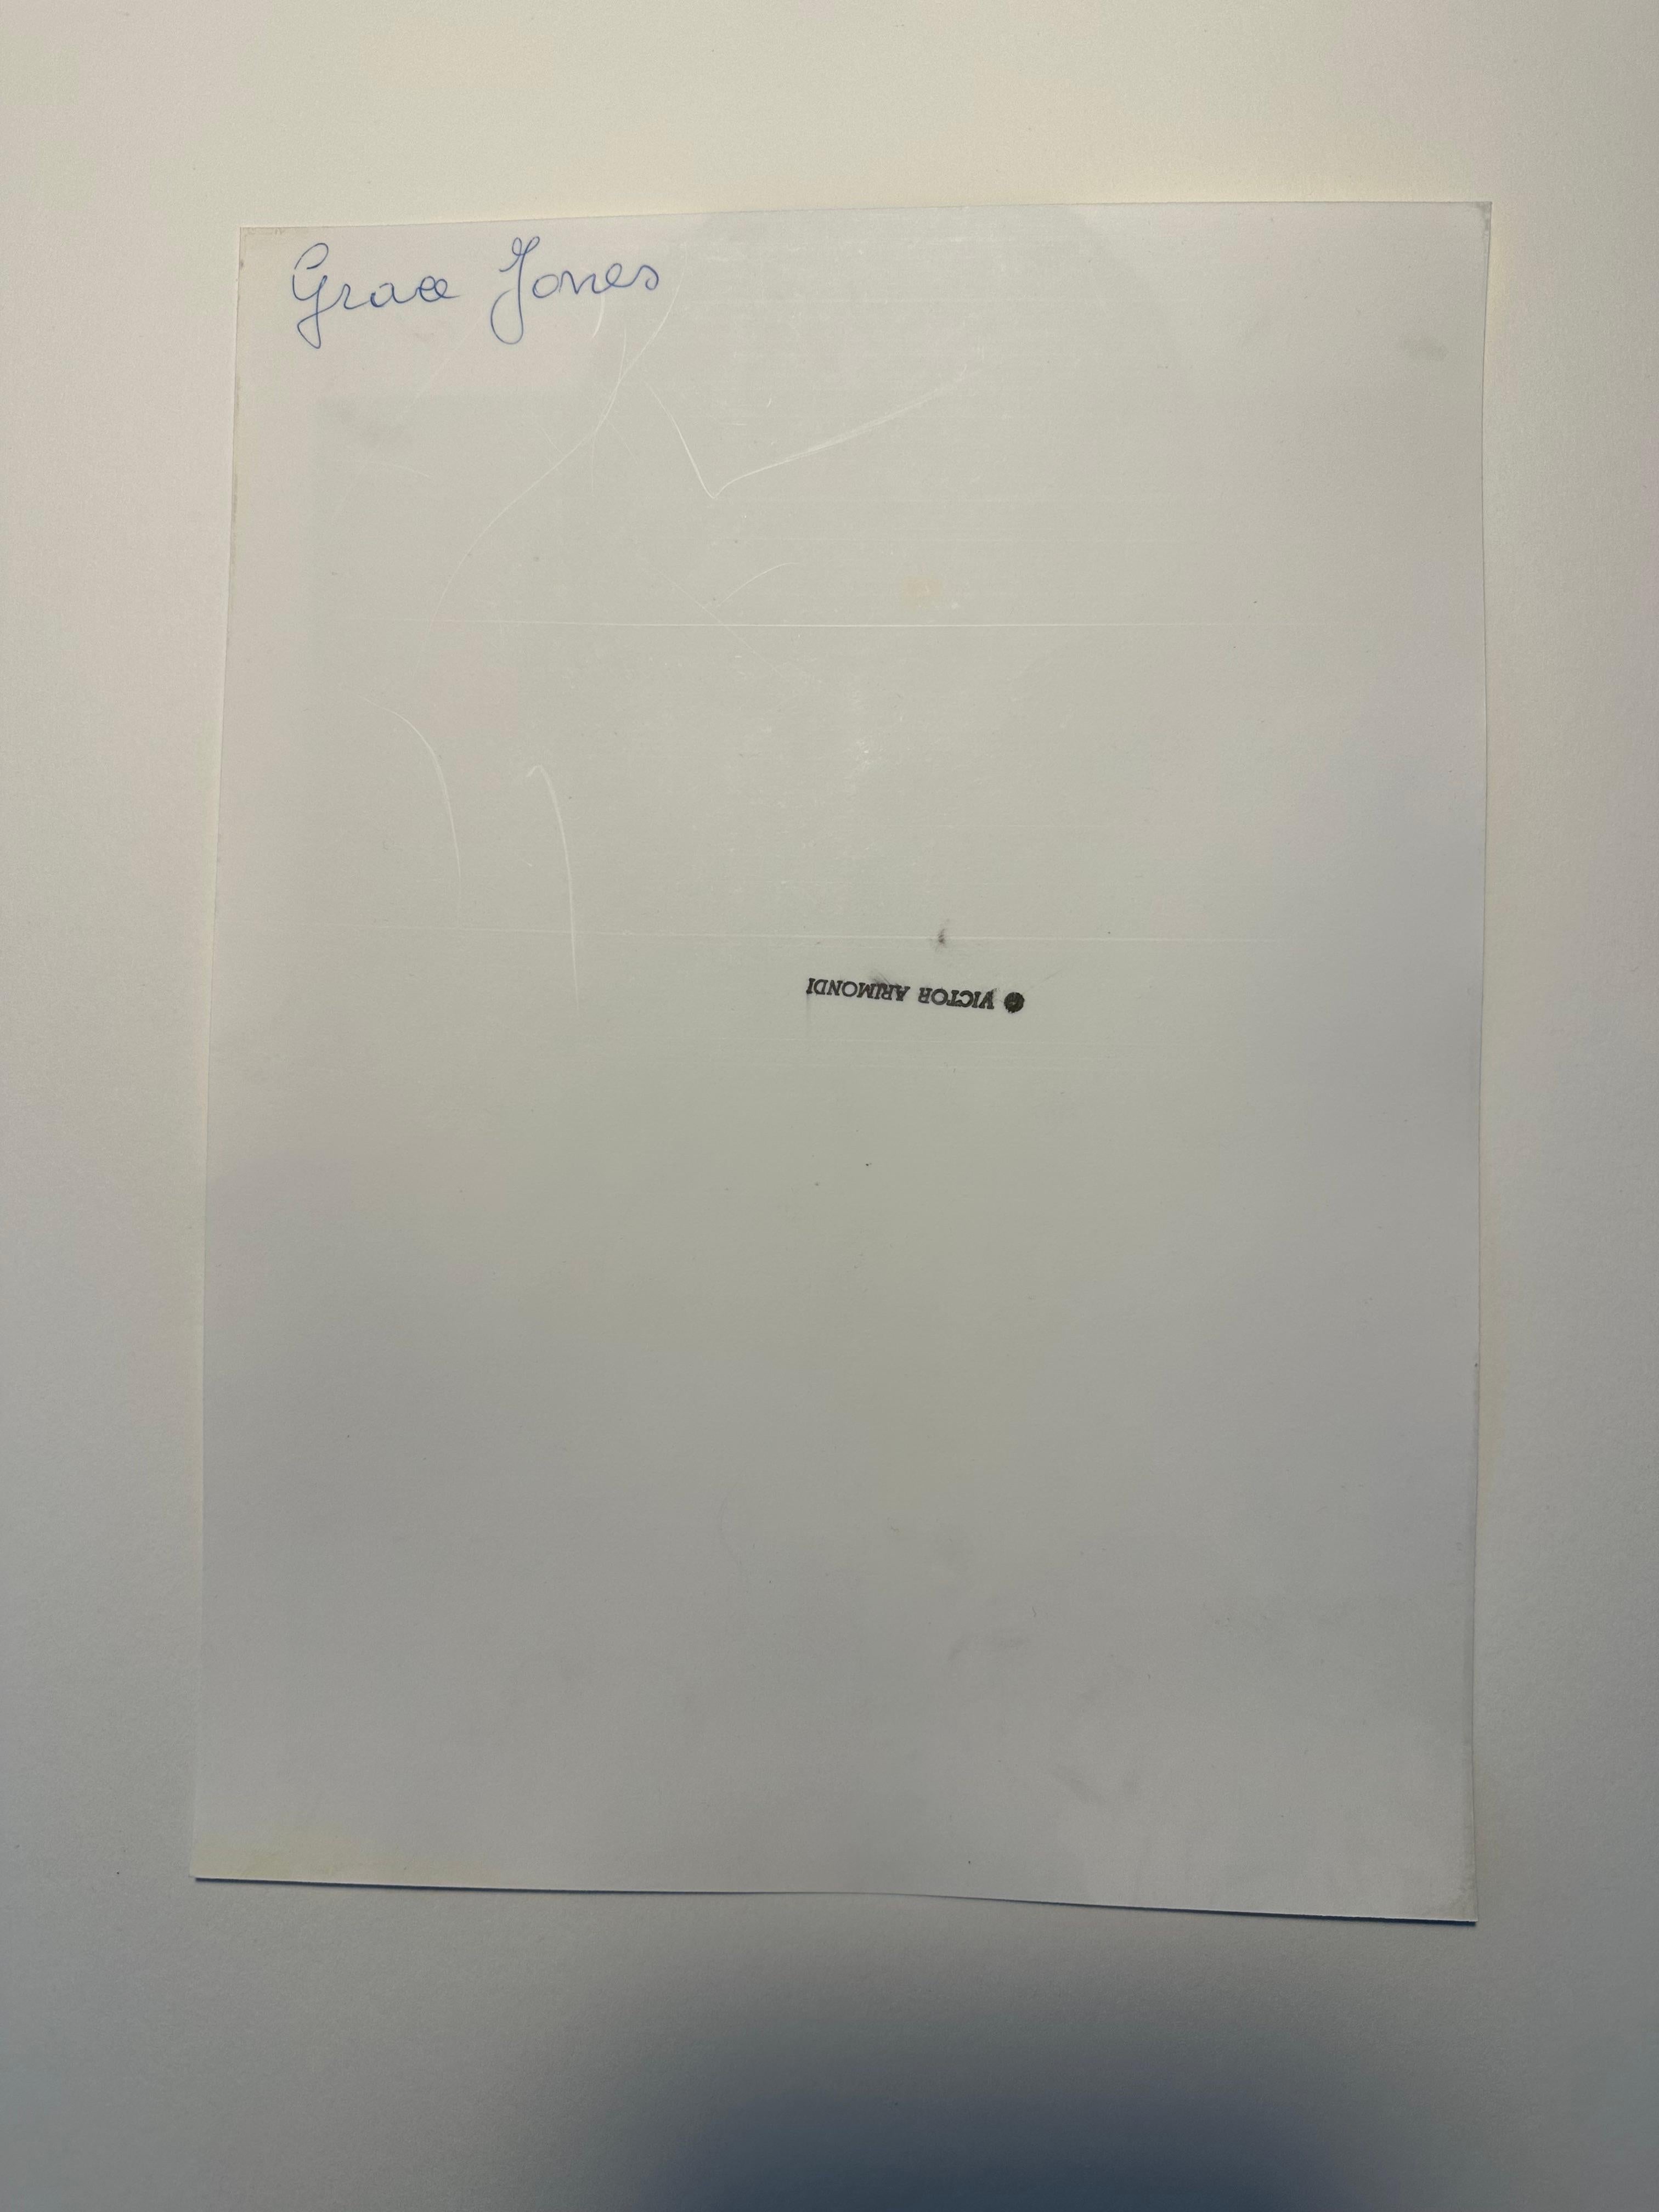 Victor Arimondi (1942-2001). Portrait de Grace Jones, 1975. Le tirage d'époque mesure 8,5 x 11,25 pouces ; 10 x 13 pouces encadré. Cachet du Studio de l'Artistics au verso.  

Une image de cette même séance photo a été utilisée pour publication dans